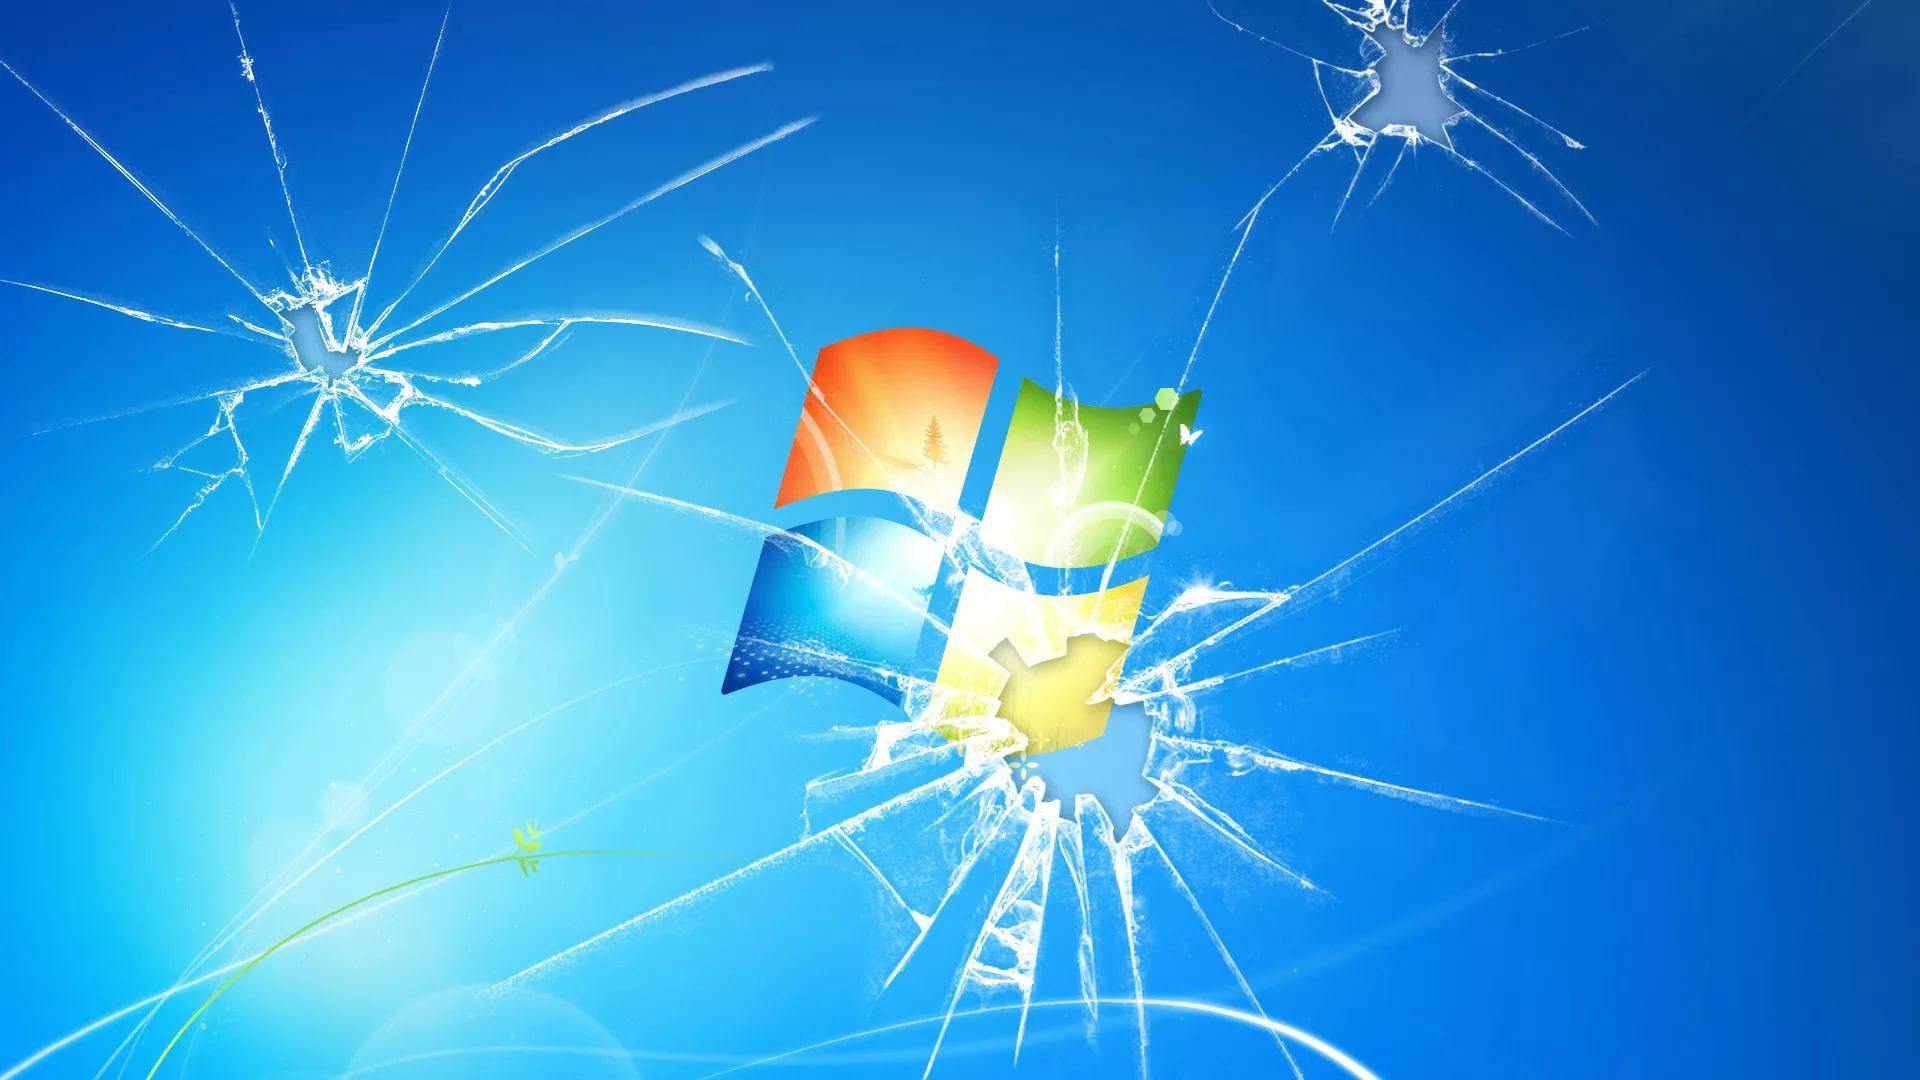 Hình nền vỡ màn hình cho máy tính